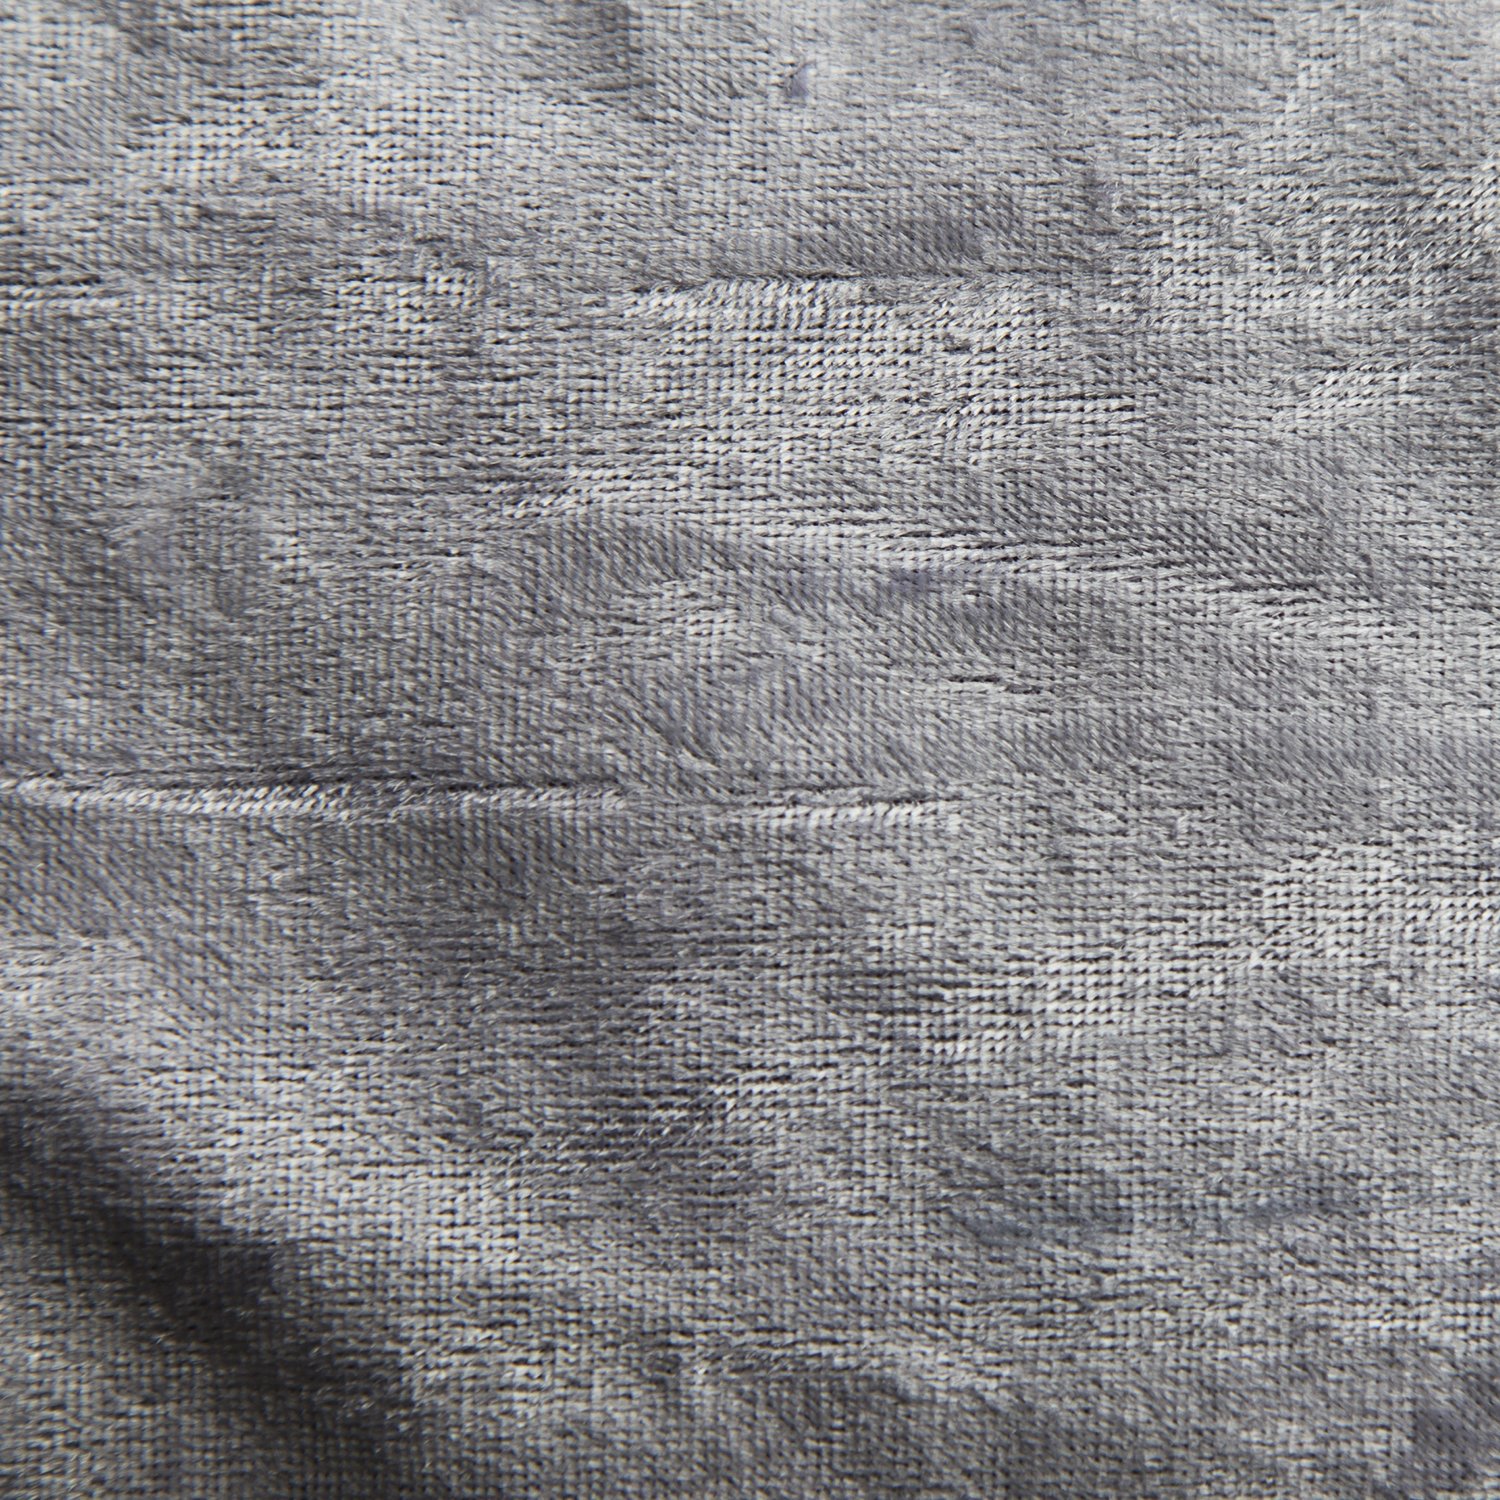 Ткань уплотненный гобелен серебристый/фиолетовый бархат (KS-431)